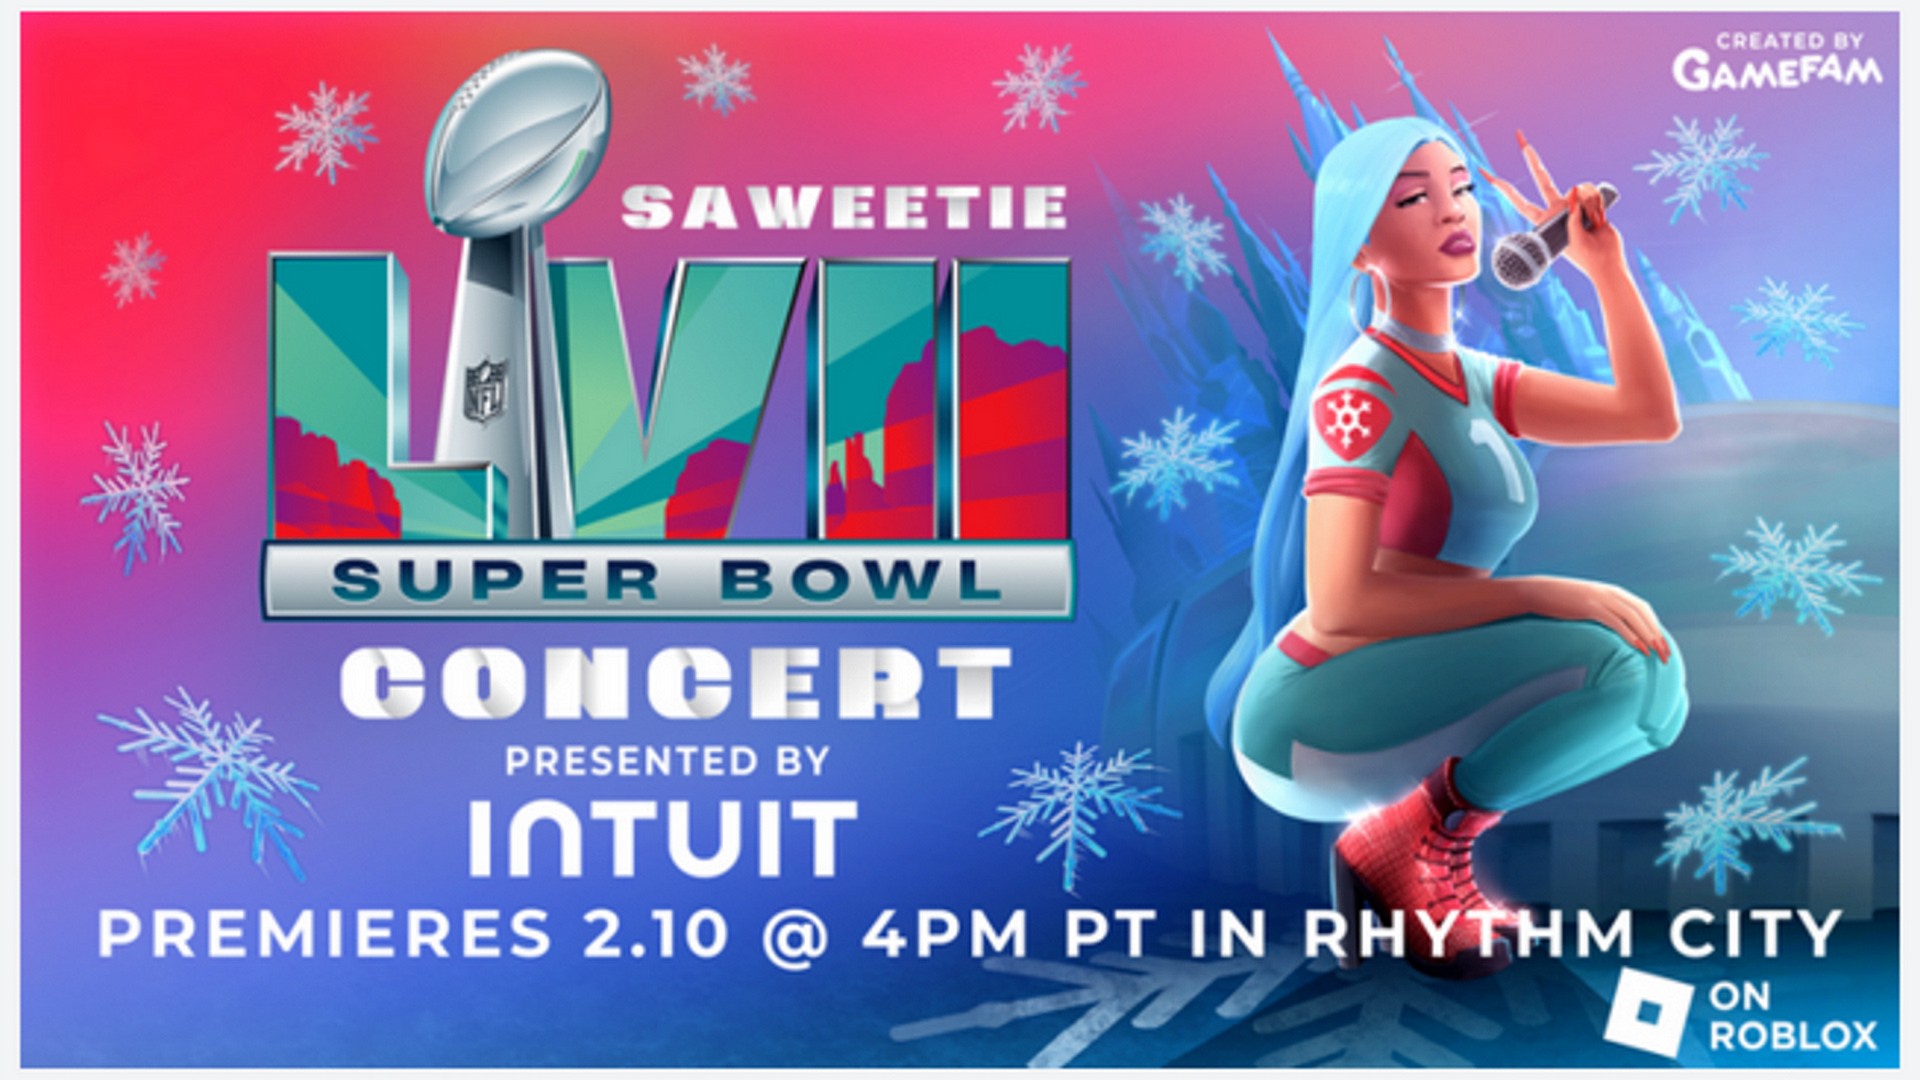 Super Bowl. Intuit partenaire du concert virtuel de Saweetie sur Roblox